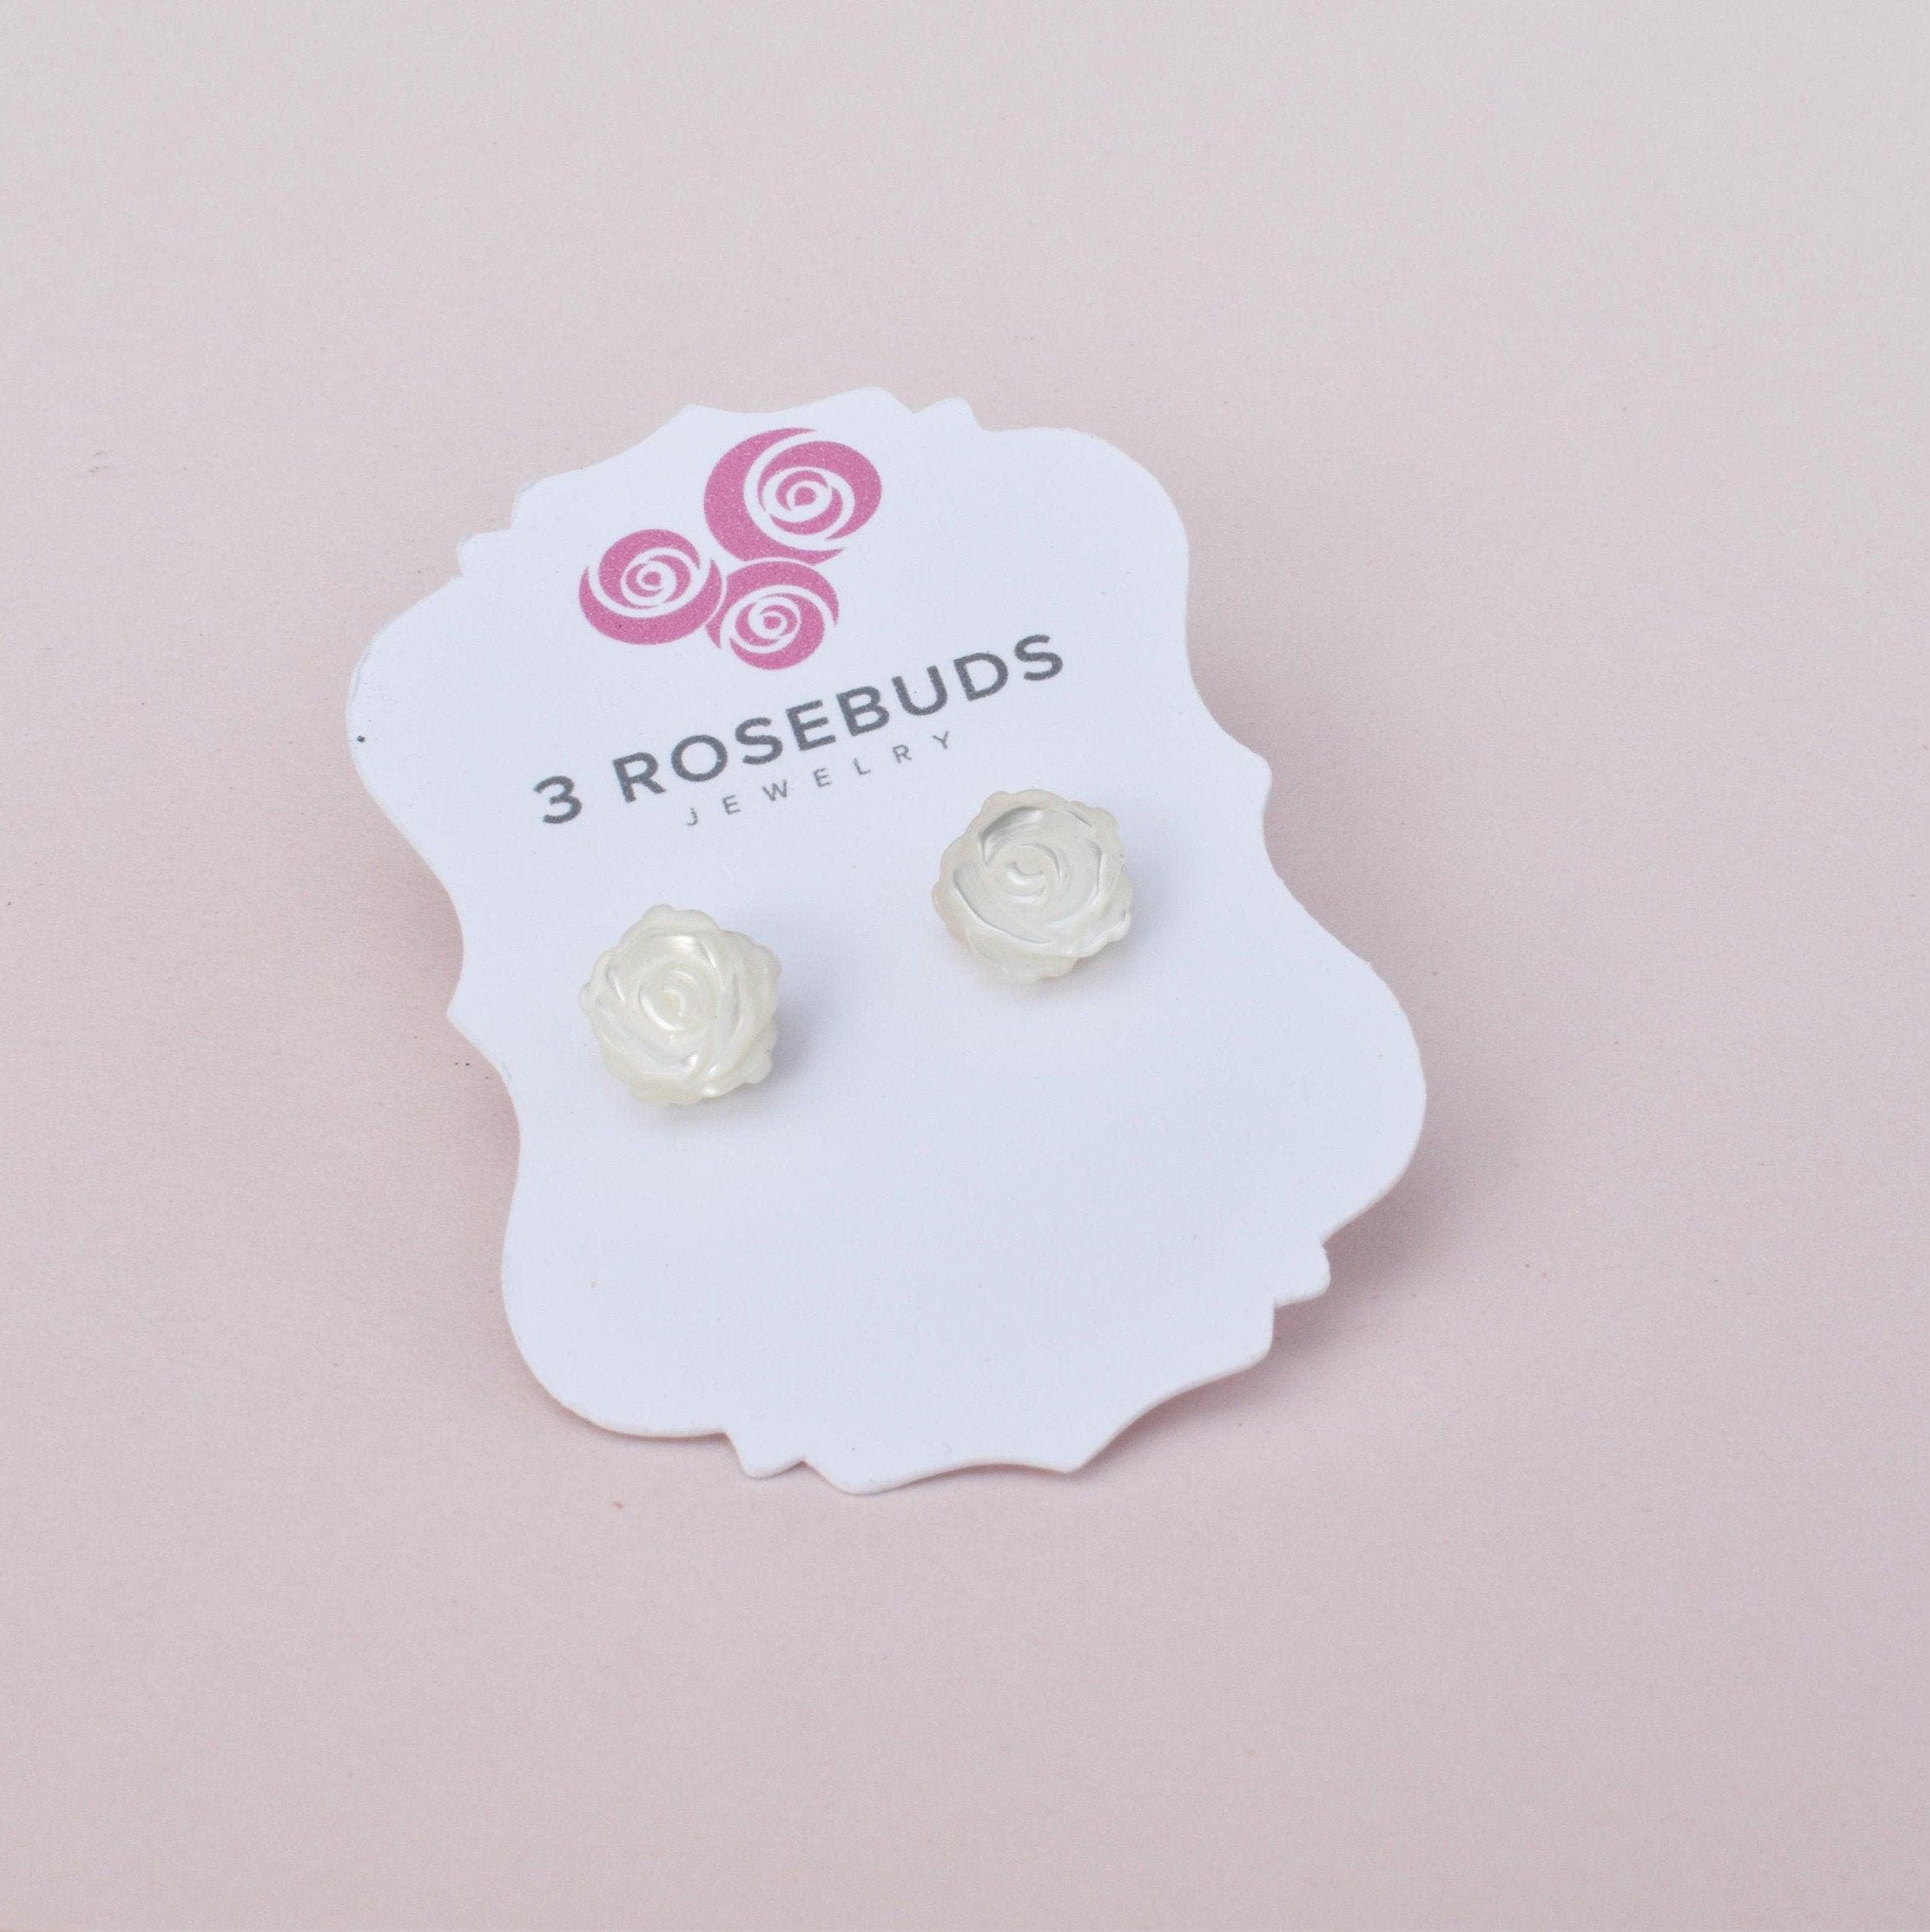 Girls Little Rosebuds Earrings with Mother of Pearls - 3Rosebudsco.com